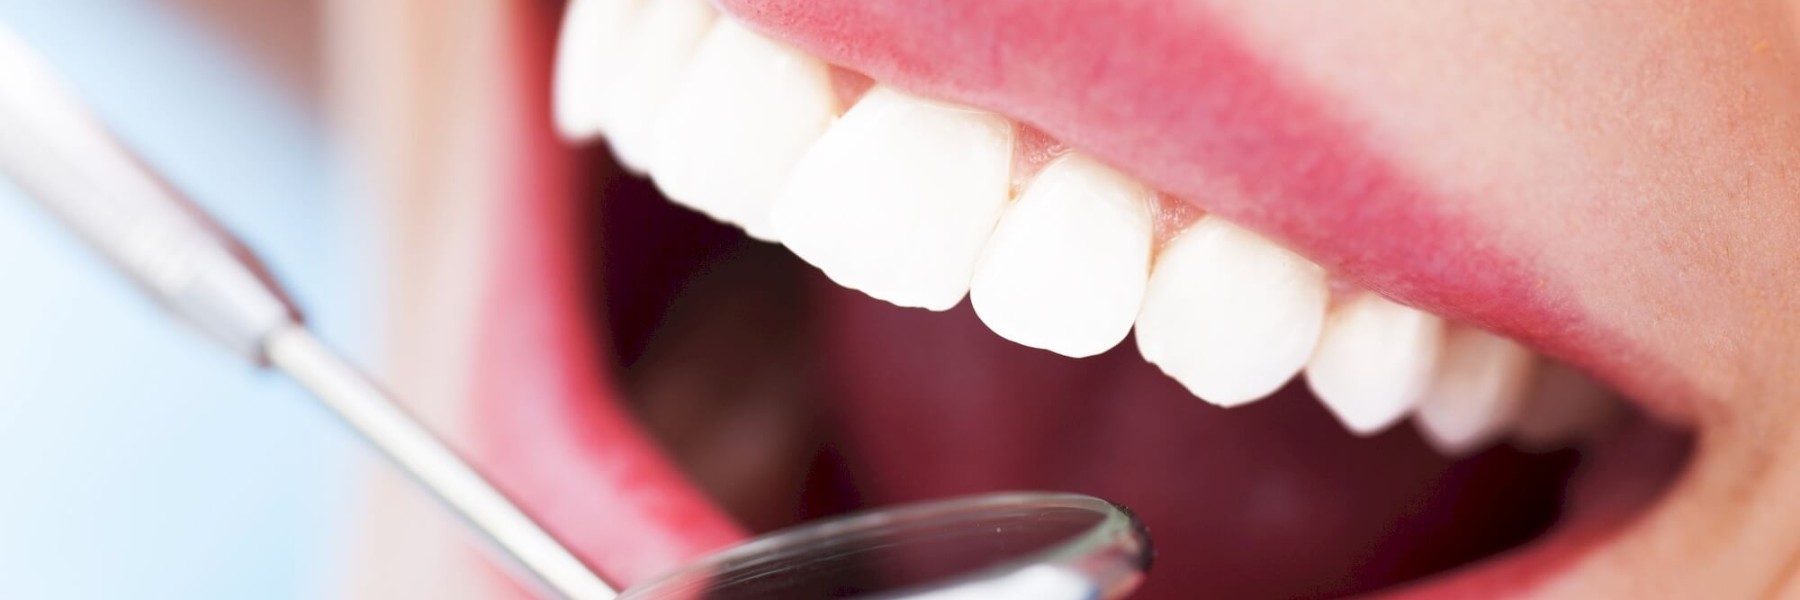 odontoiatra-viadana-dentisti-clinica-altea